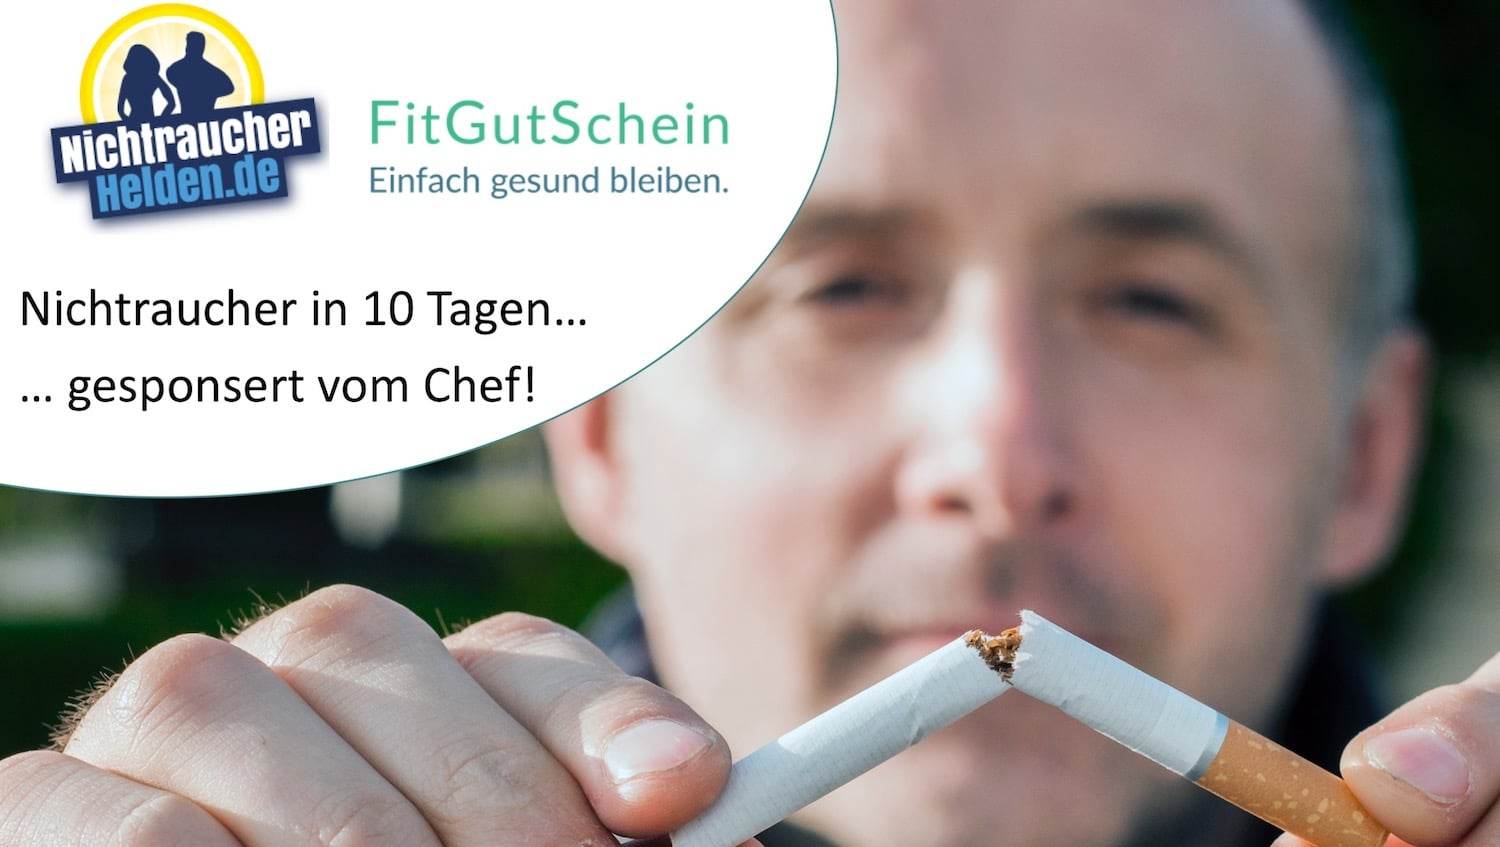 Rauchfrei in 10 Tagen: Nichtraucherheld mit FitGutSchein werden